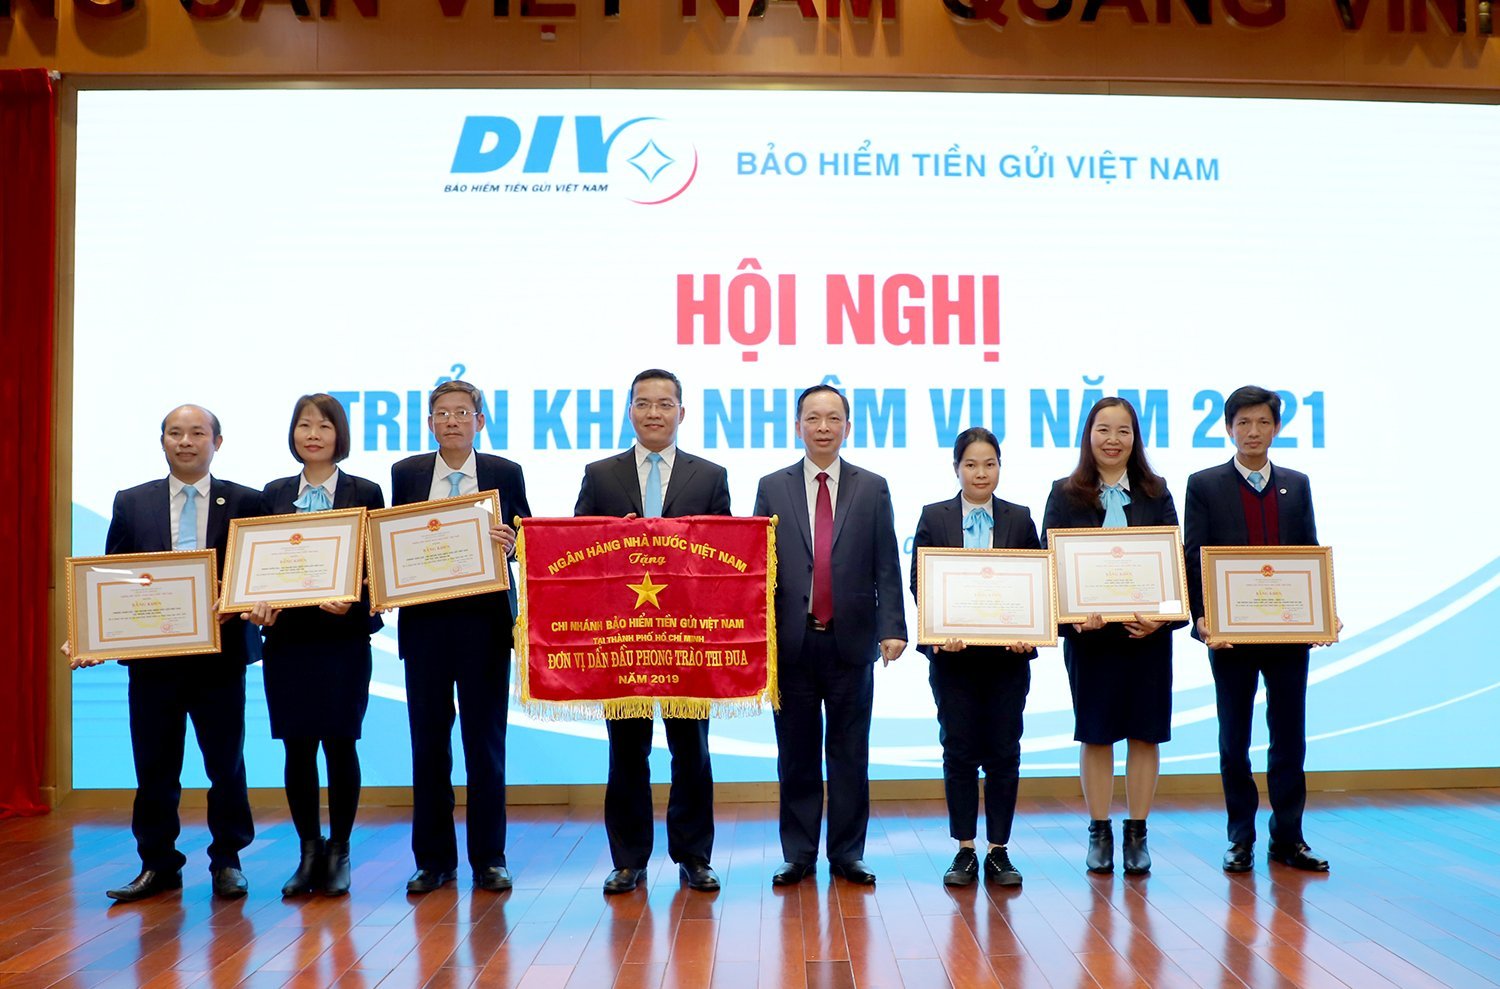 Phó Thống đốc NHNN Đào Minh Tú đã trao Cờ thi đua của NHNN